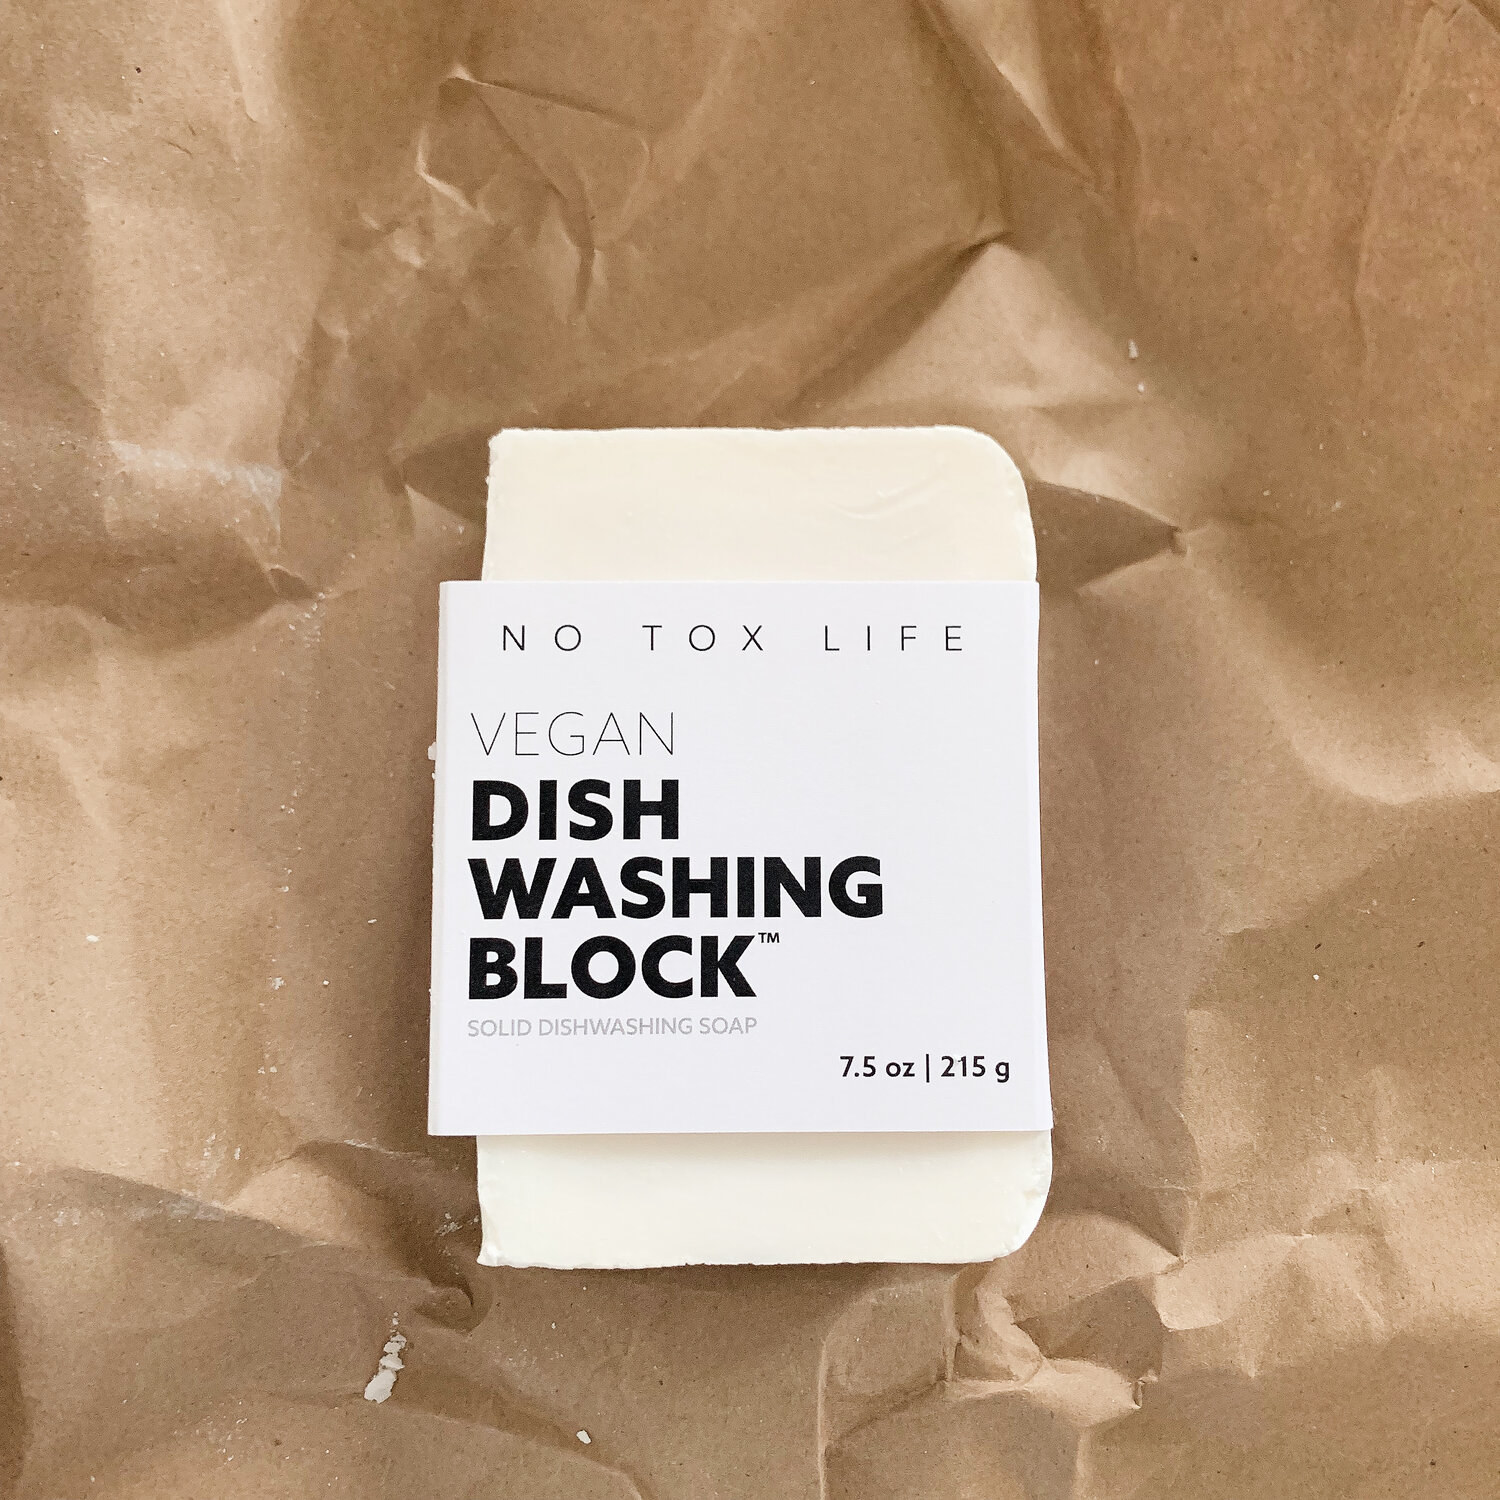 the white dishwashing block